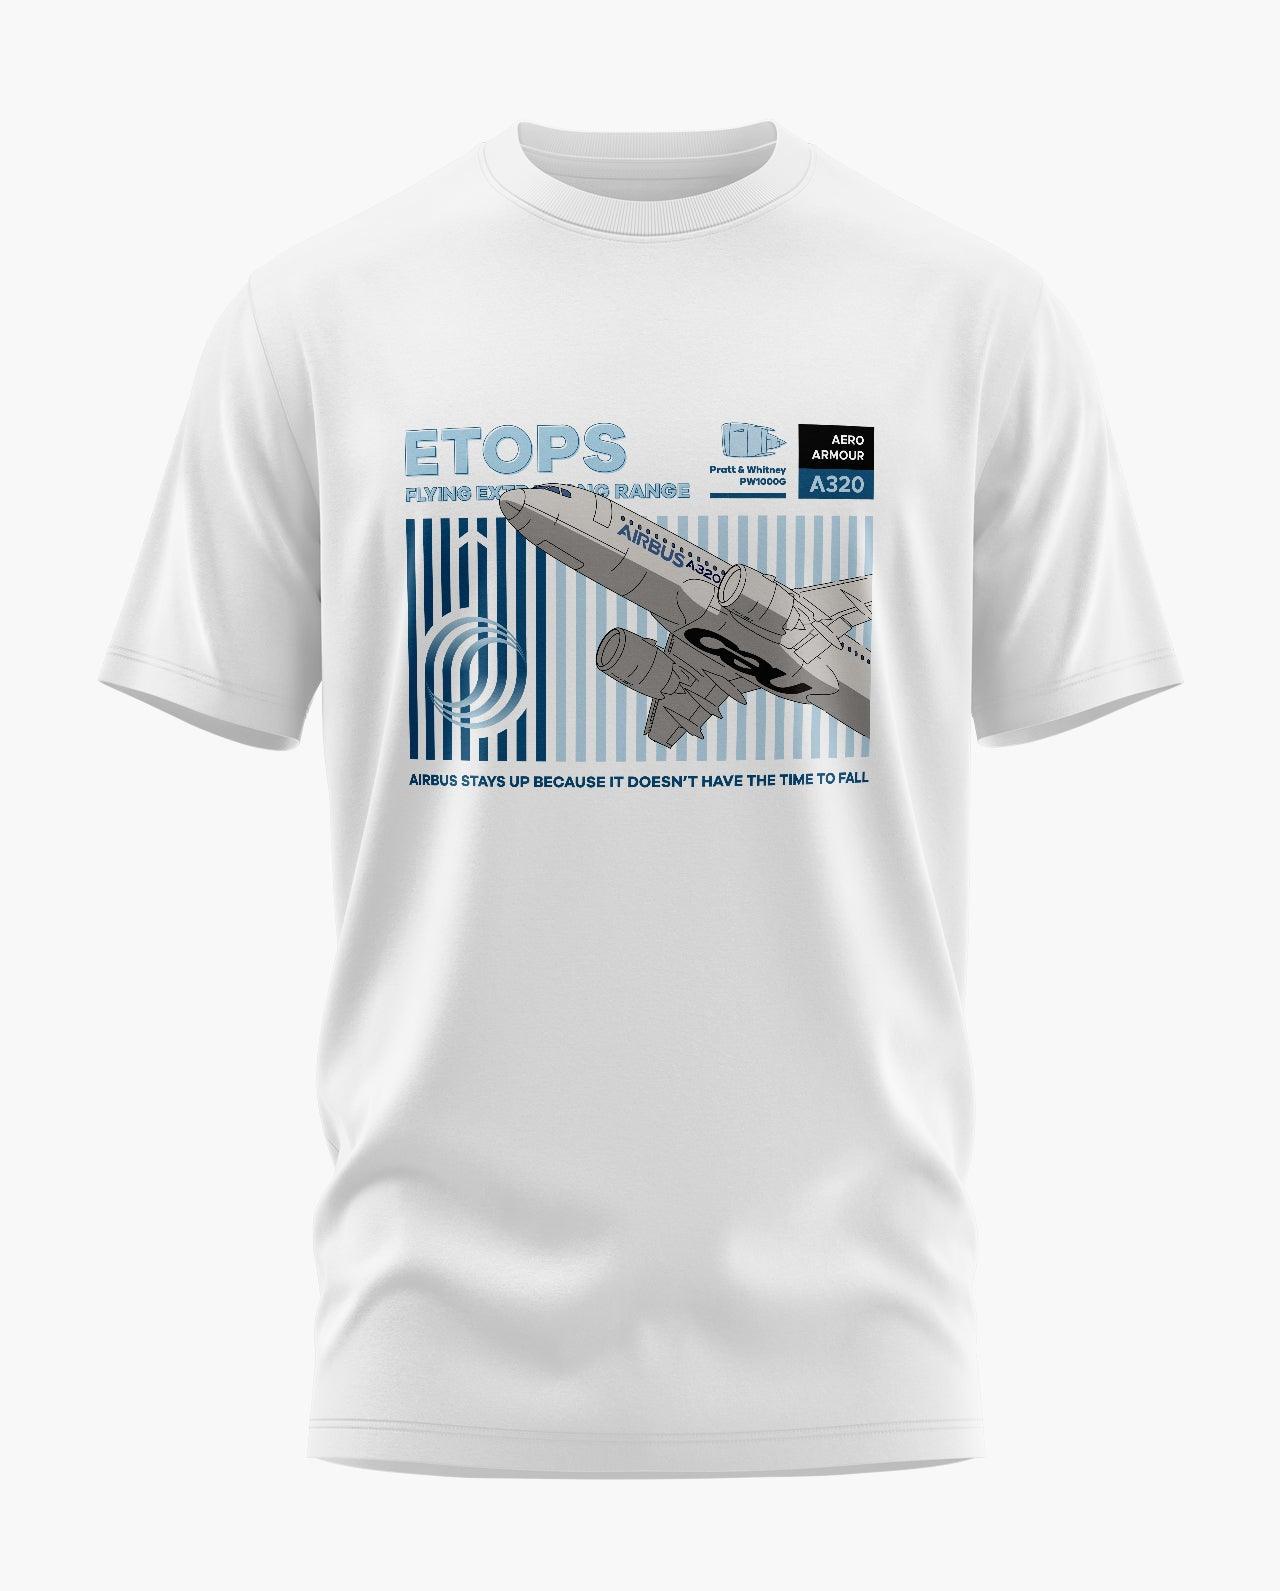 A320 ETOPS T-Shirt - Aero Armour